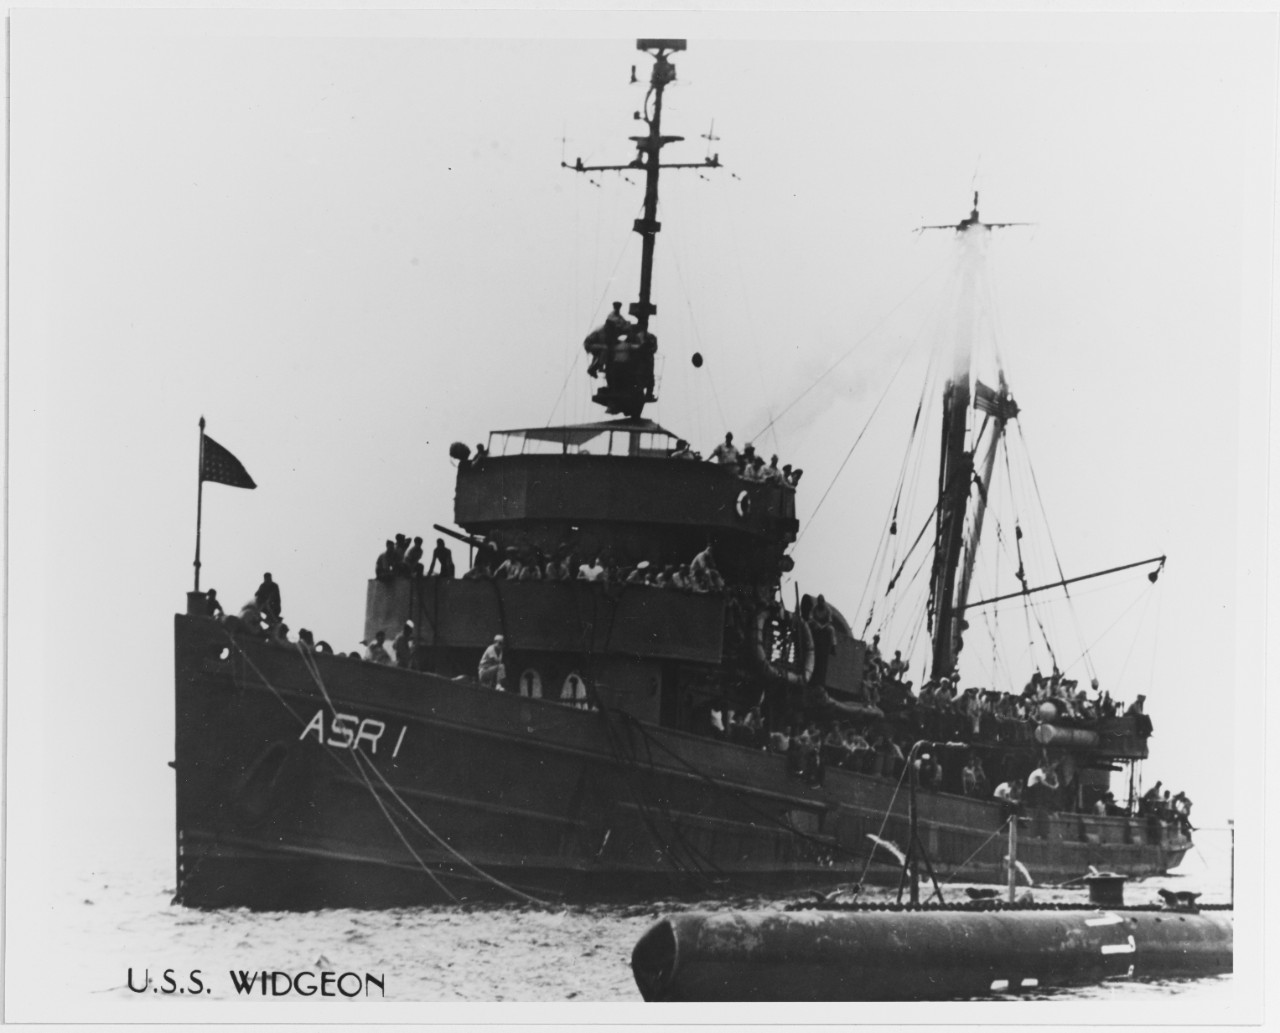 USS WIDGEON (ASR-1)